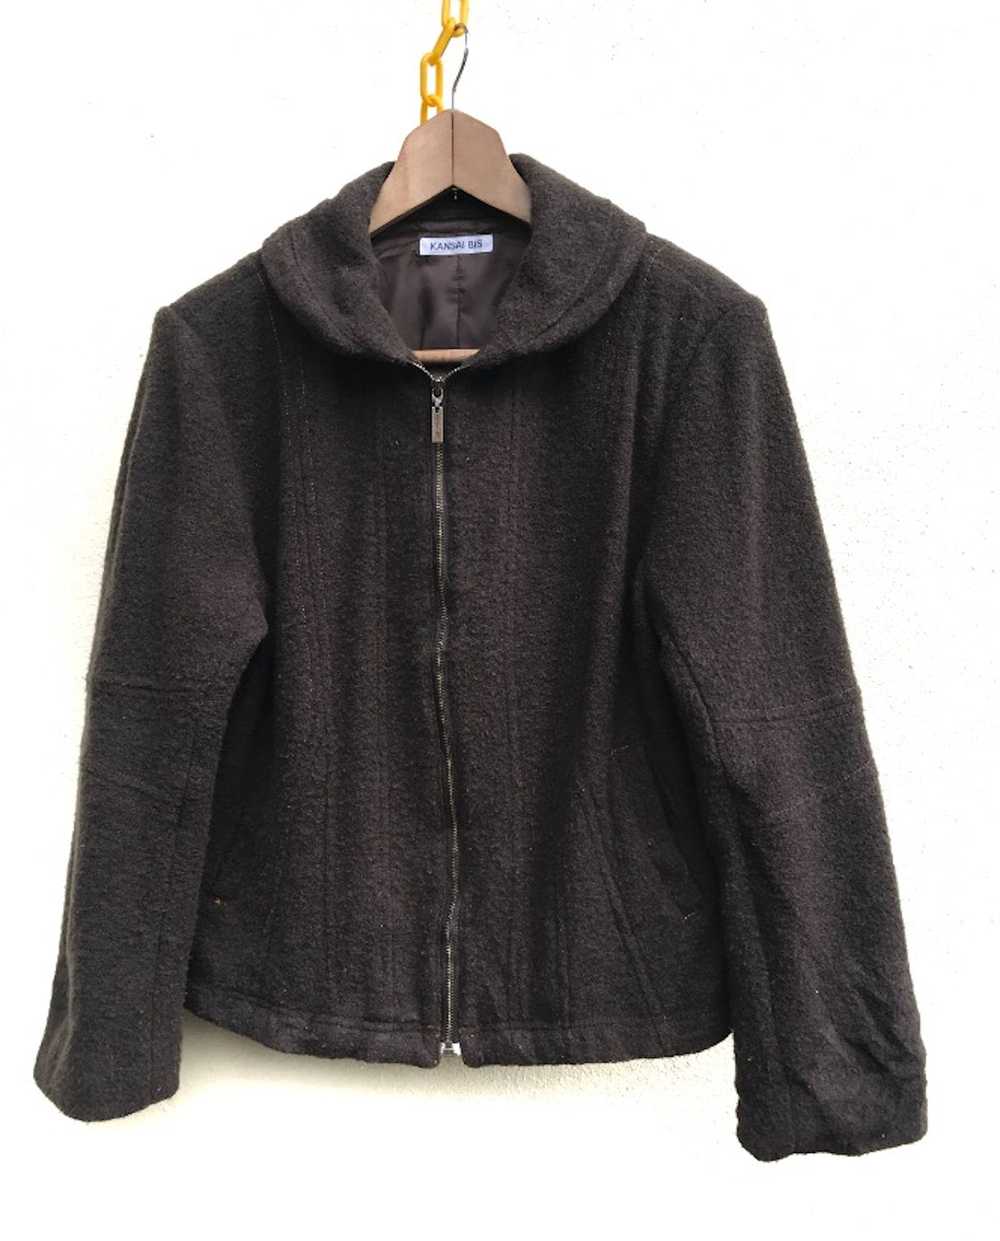 Kansai Yamamoto Kansai bis jacket - image 1